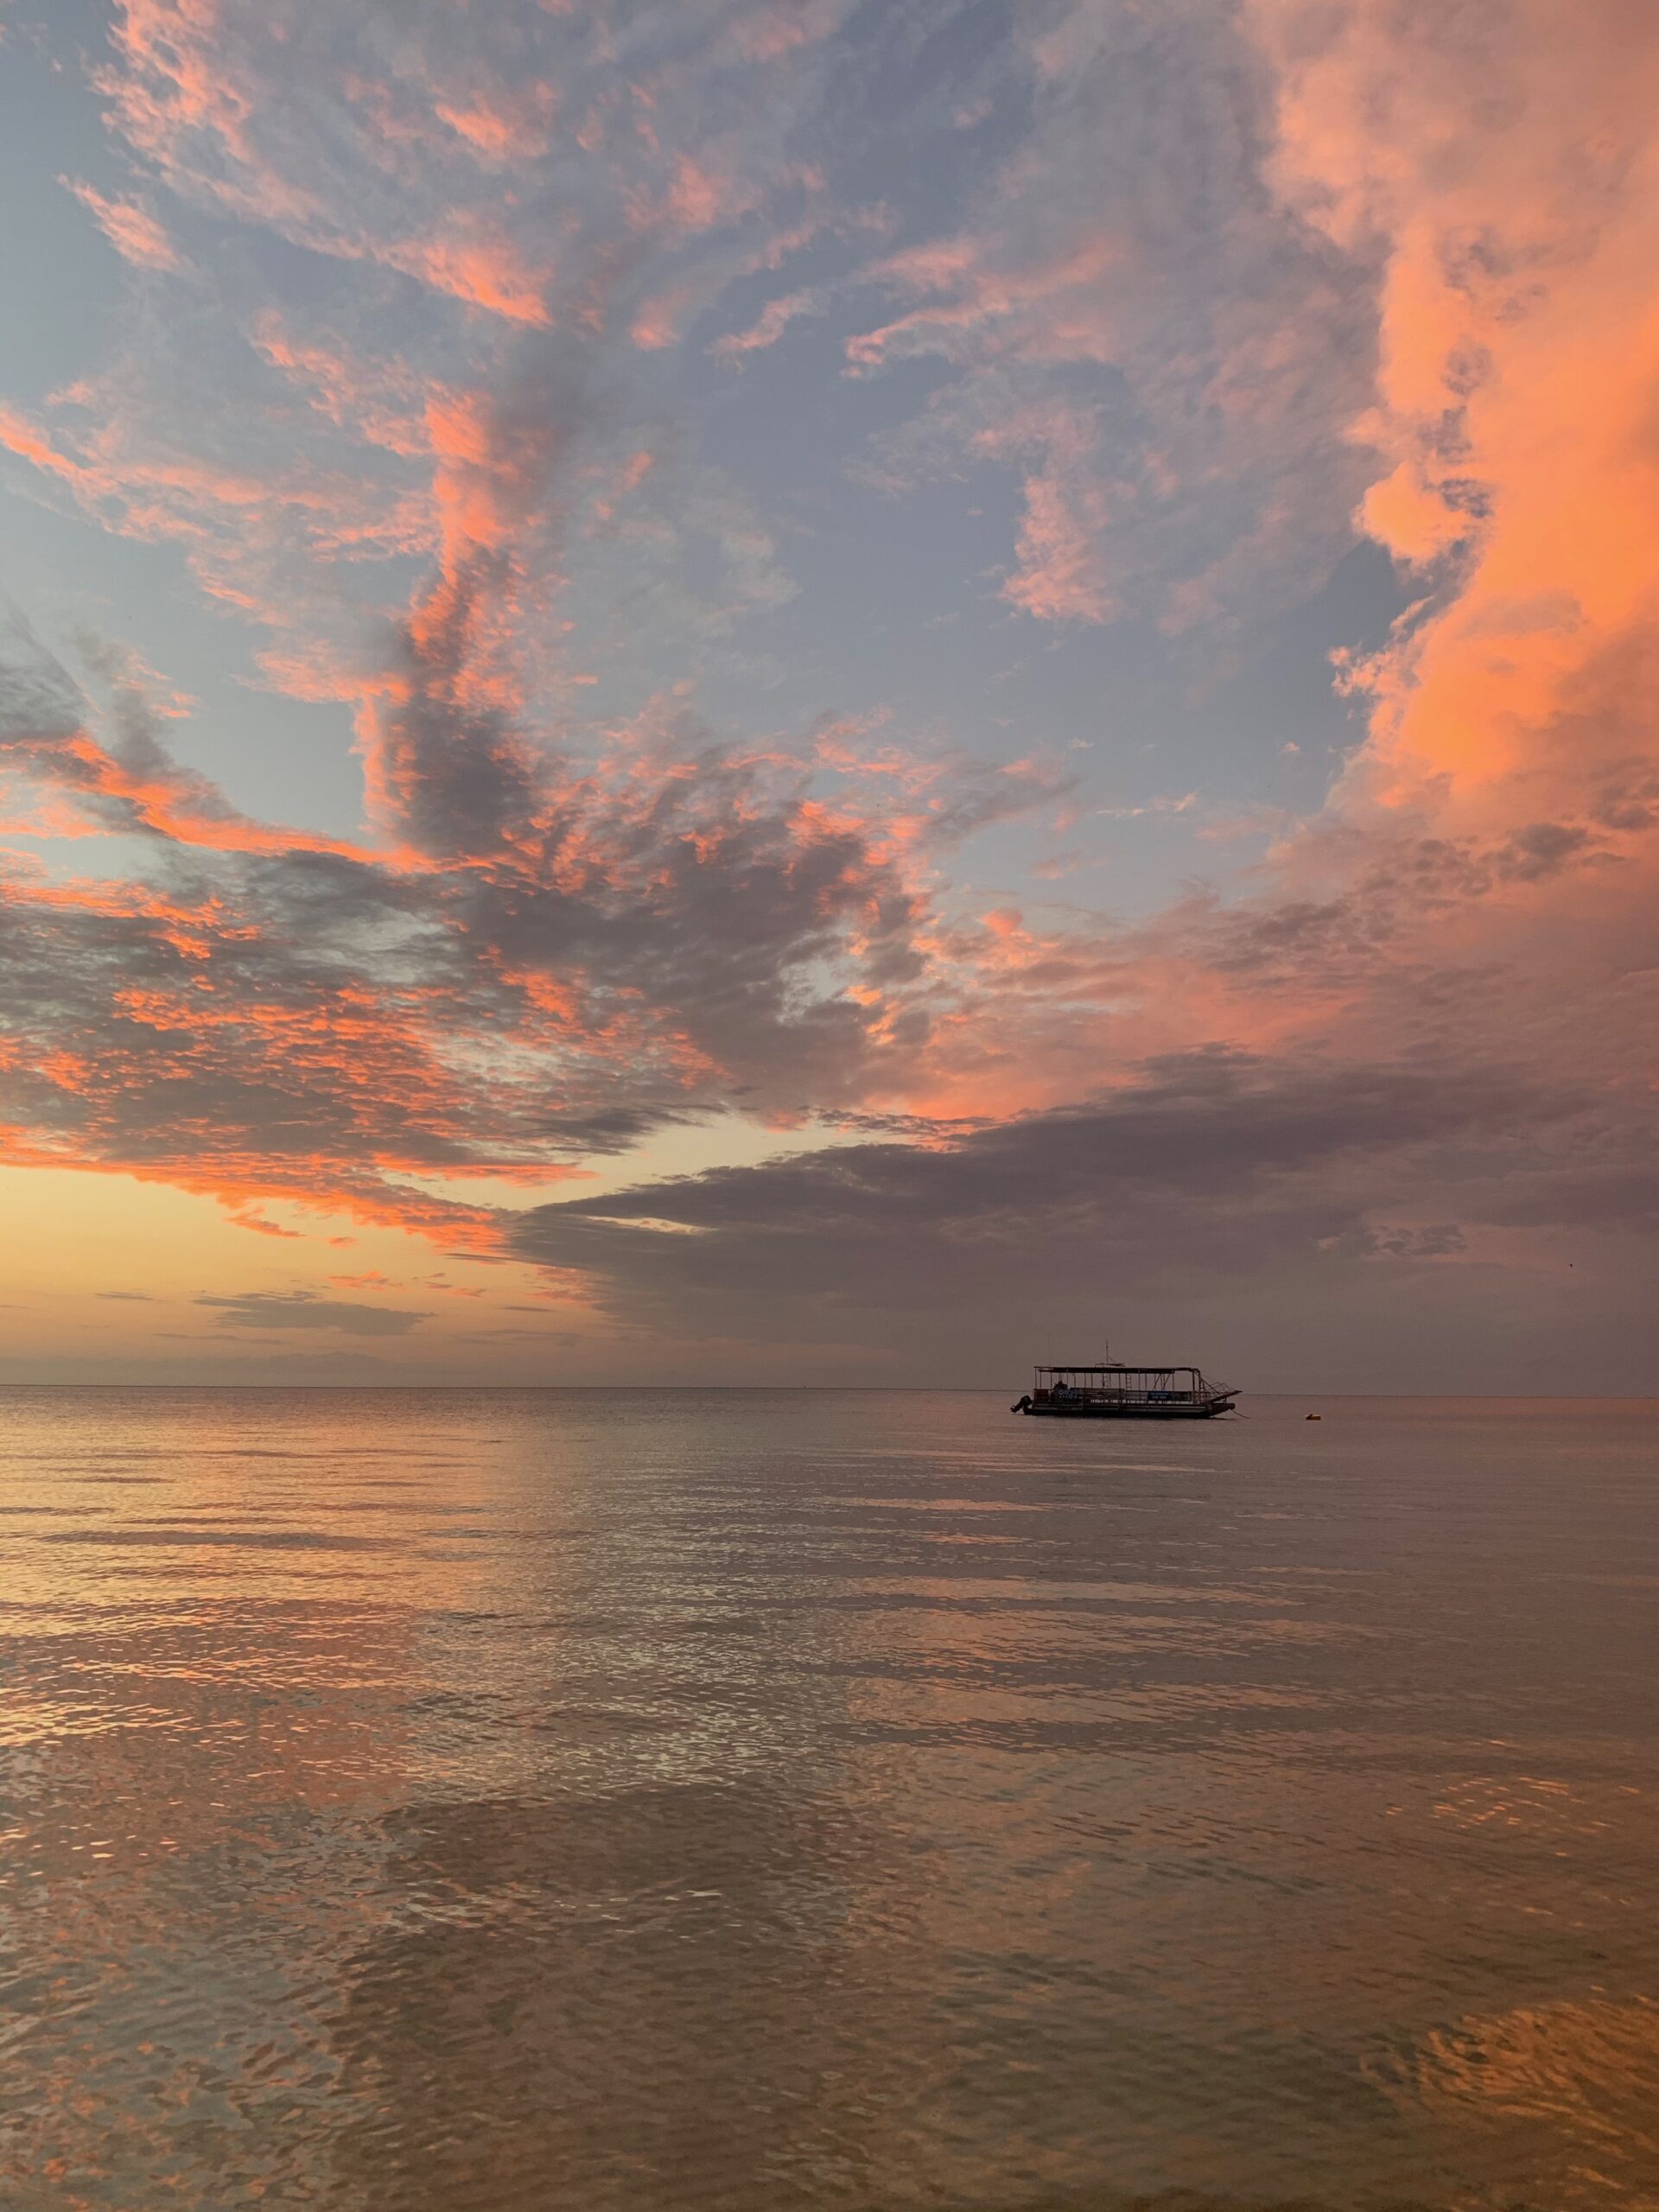 Bild: Sonnenuntergang am Strand von Moreton Island, Australien